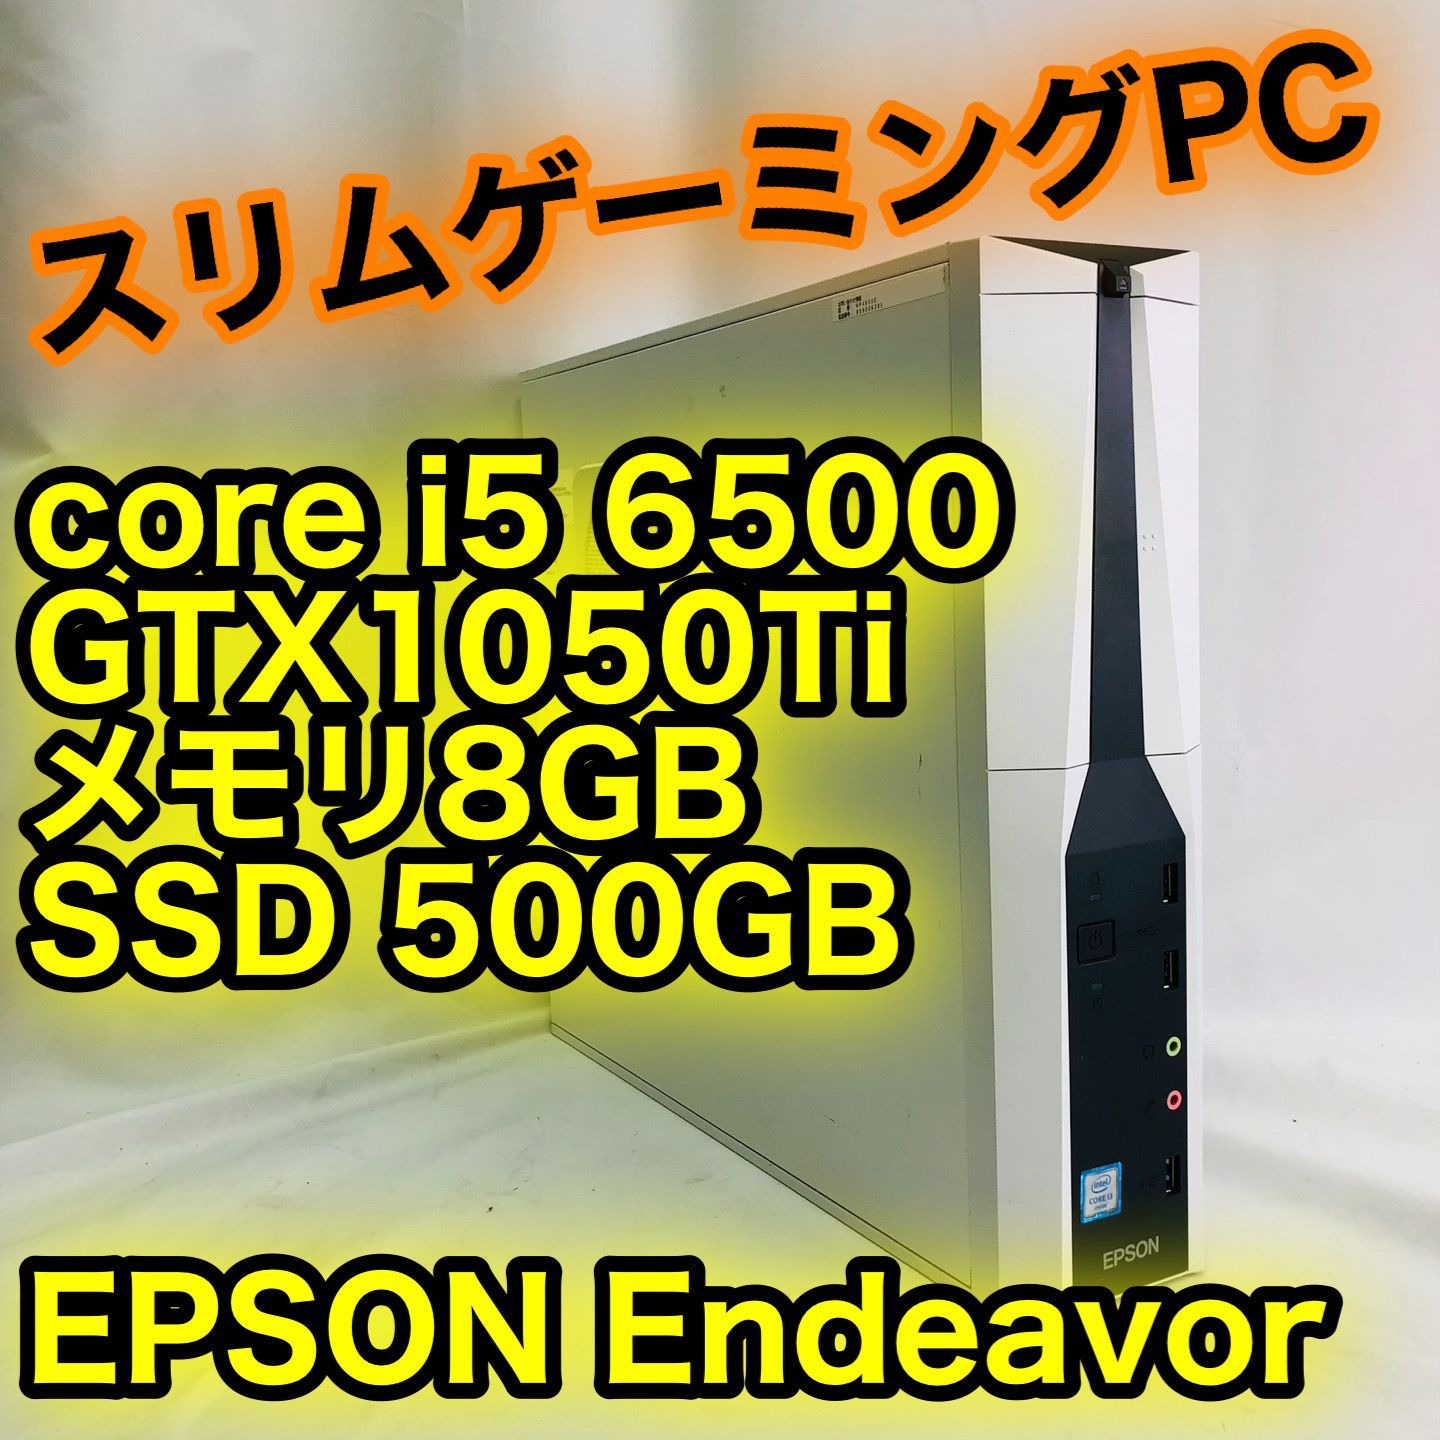 Corei5-7500 + GTX1050 M.2 SSD ゲーミングpc - デスクトップ型PC